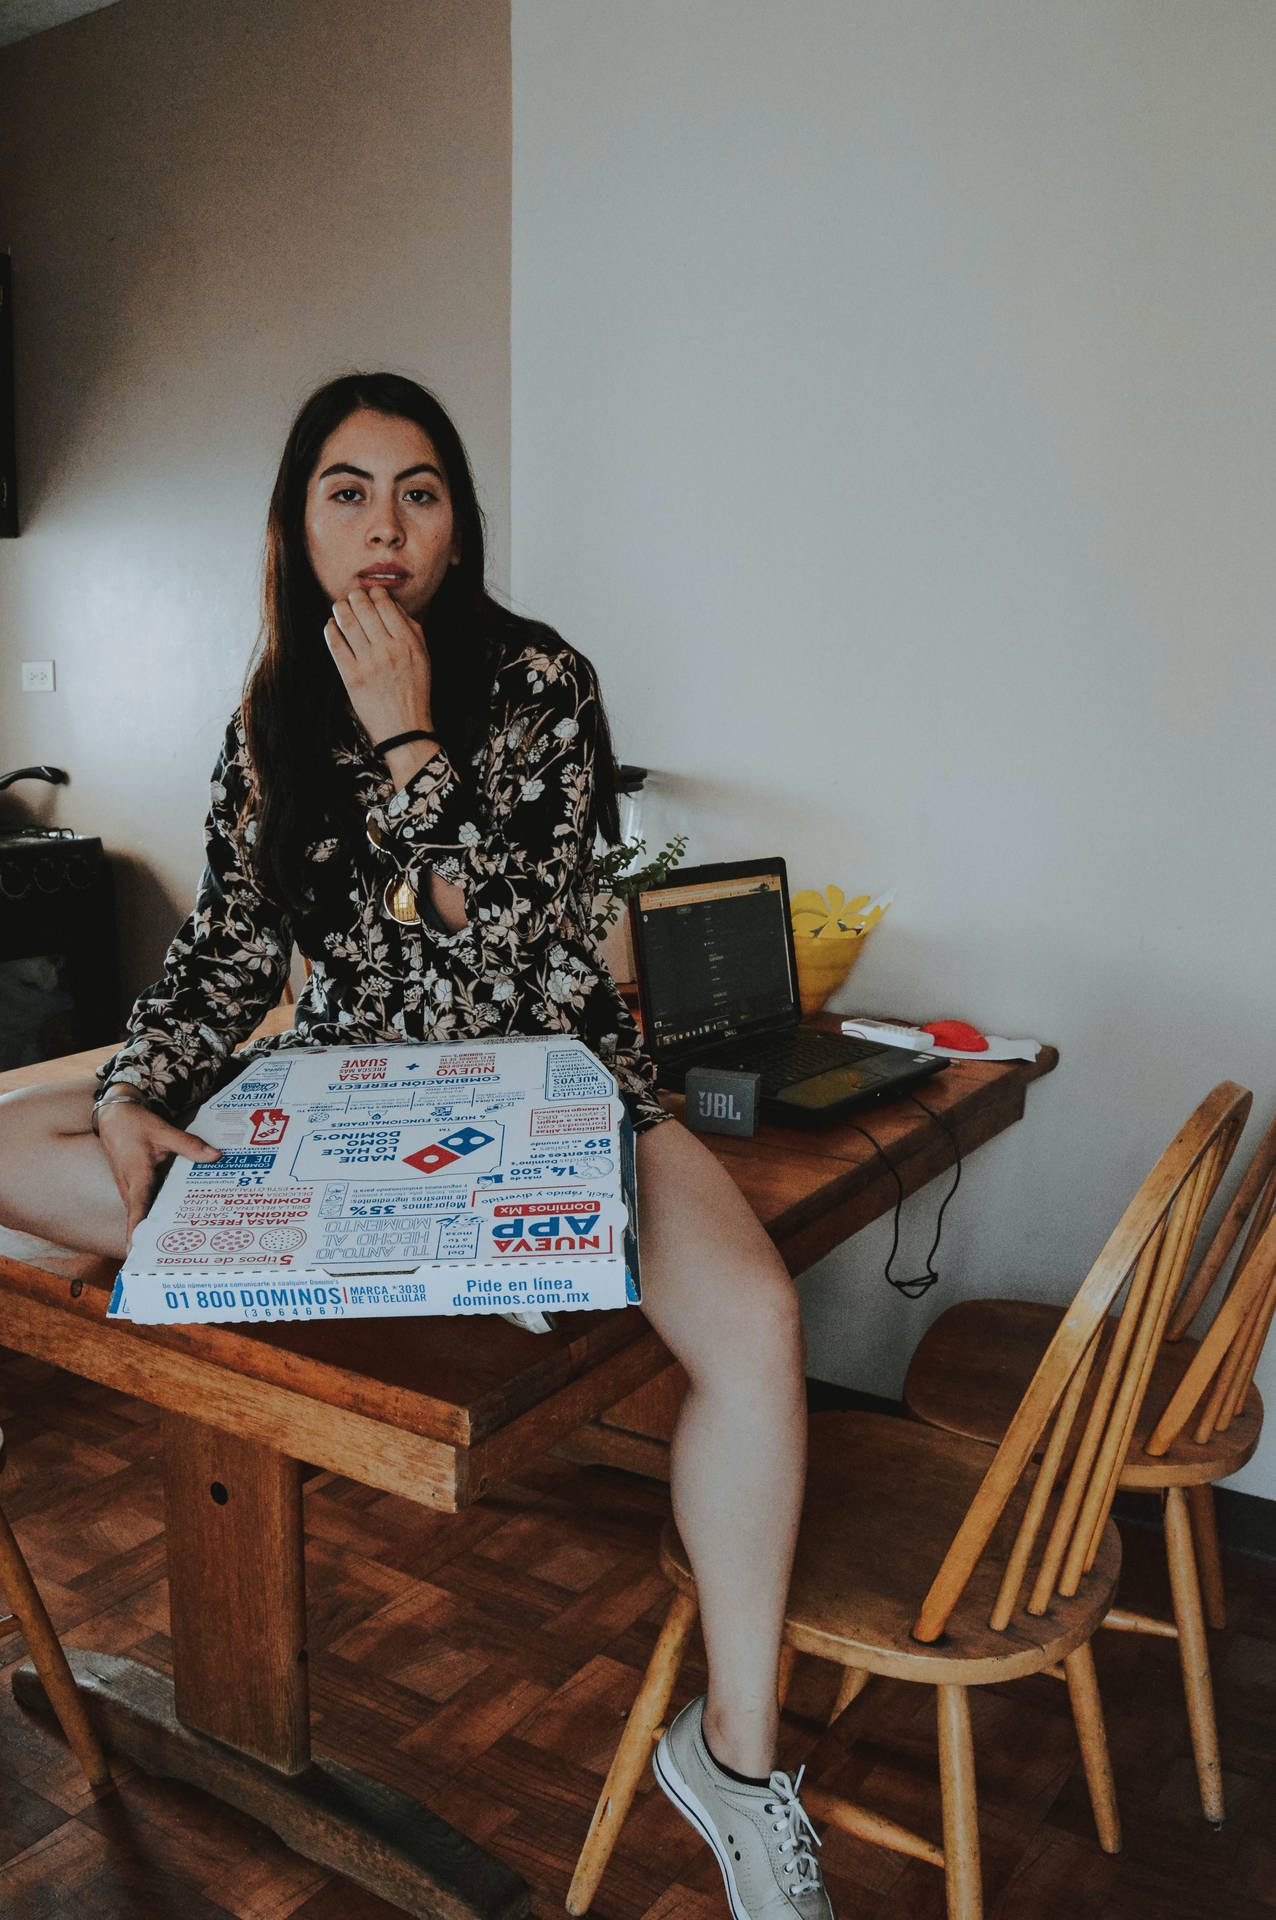 Meninasegurando Uma Caixa De Pizza Da Dominos. Papel de Parede